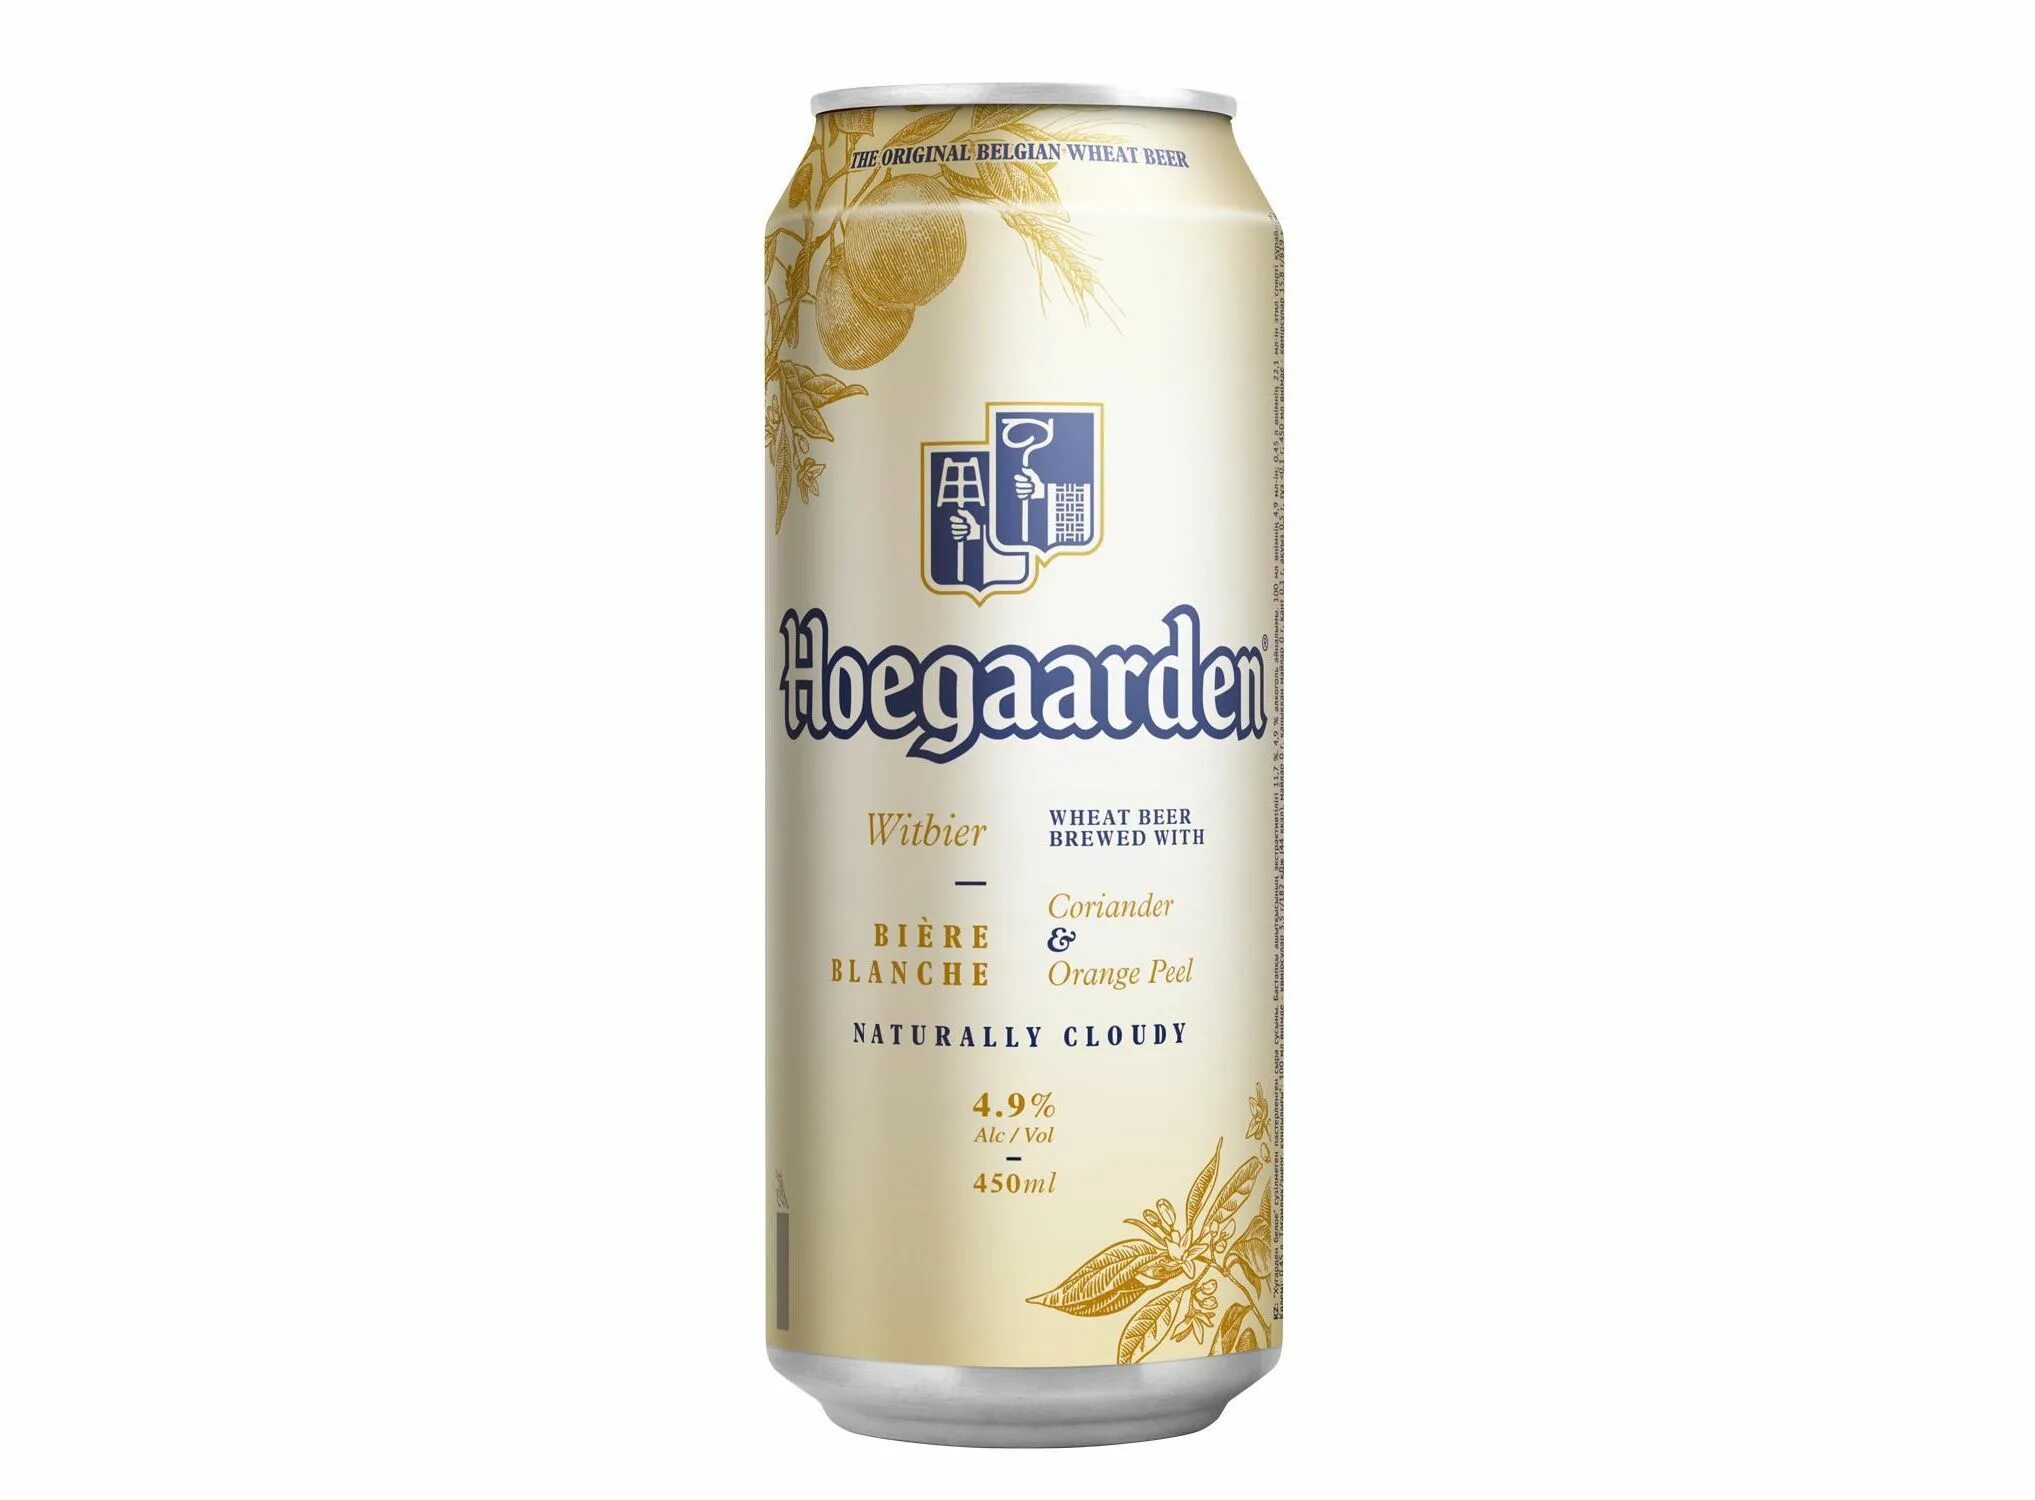 Пиво 0.45 л ж б. Пивной напиток Хугарден белое нефильтрованное 4.9 0.45л ж/б. Пиво Хугарден белое нефильтрованное 0,45 жб. Напиток пивной Хугарден белое нефильтрованное 0,45 л ж/б. Напиток пивной Хугарден белое 4,9% ж/б 0,45 л.